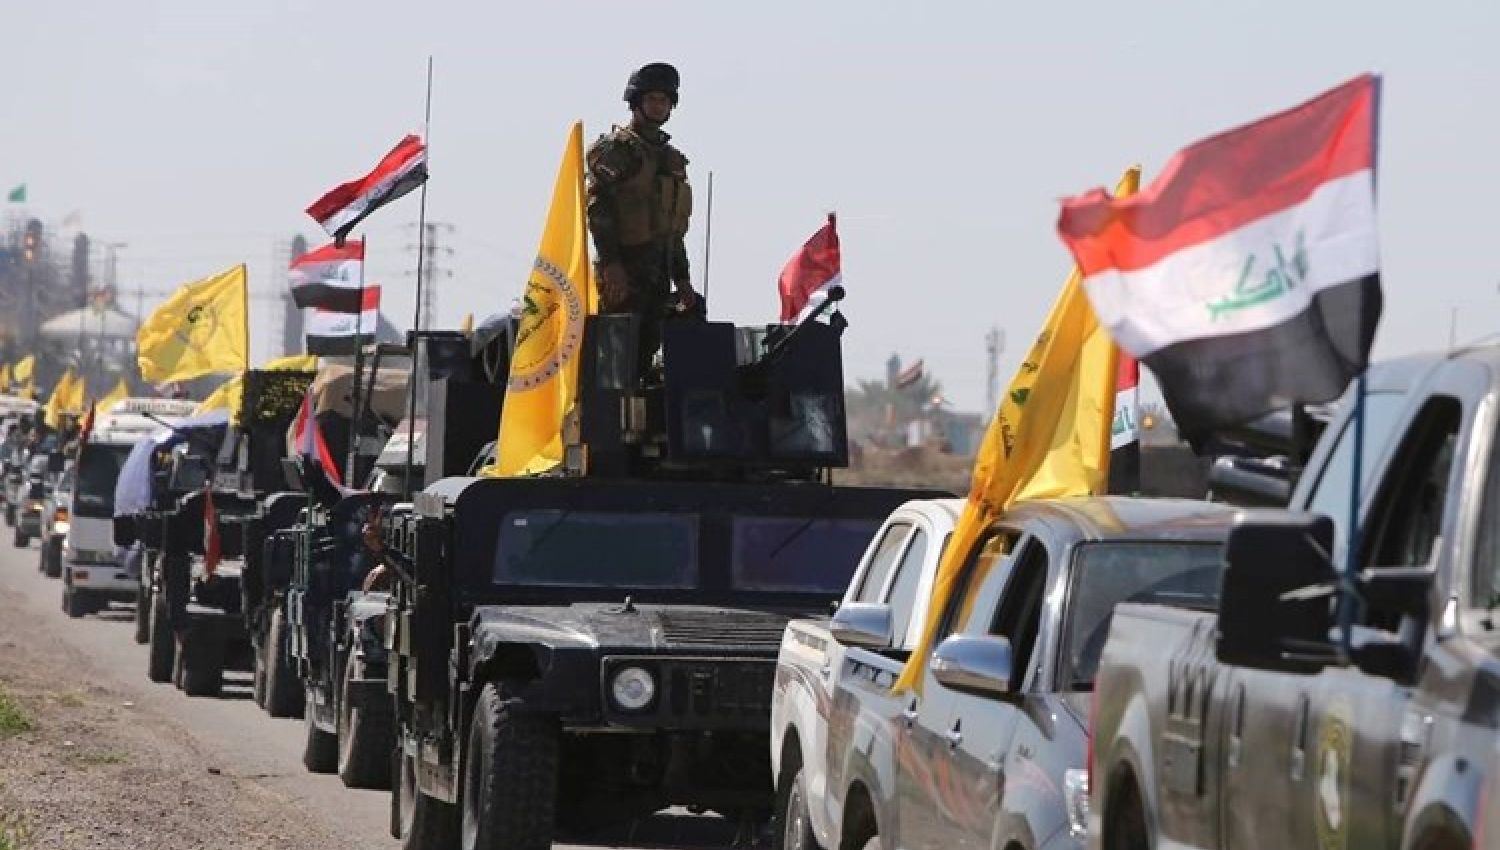 المقاومة العراقية والحشد: تكامل في الأدوار